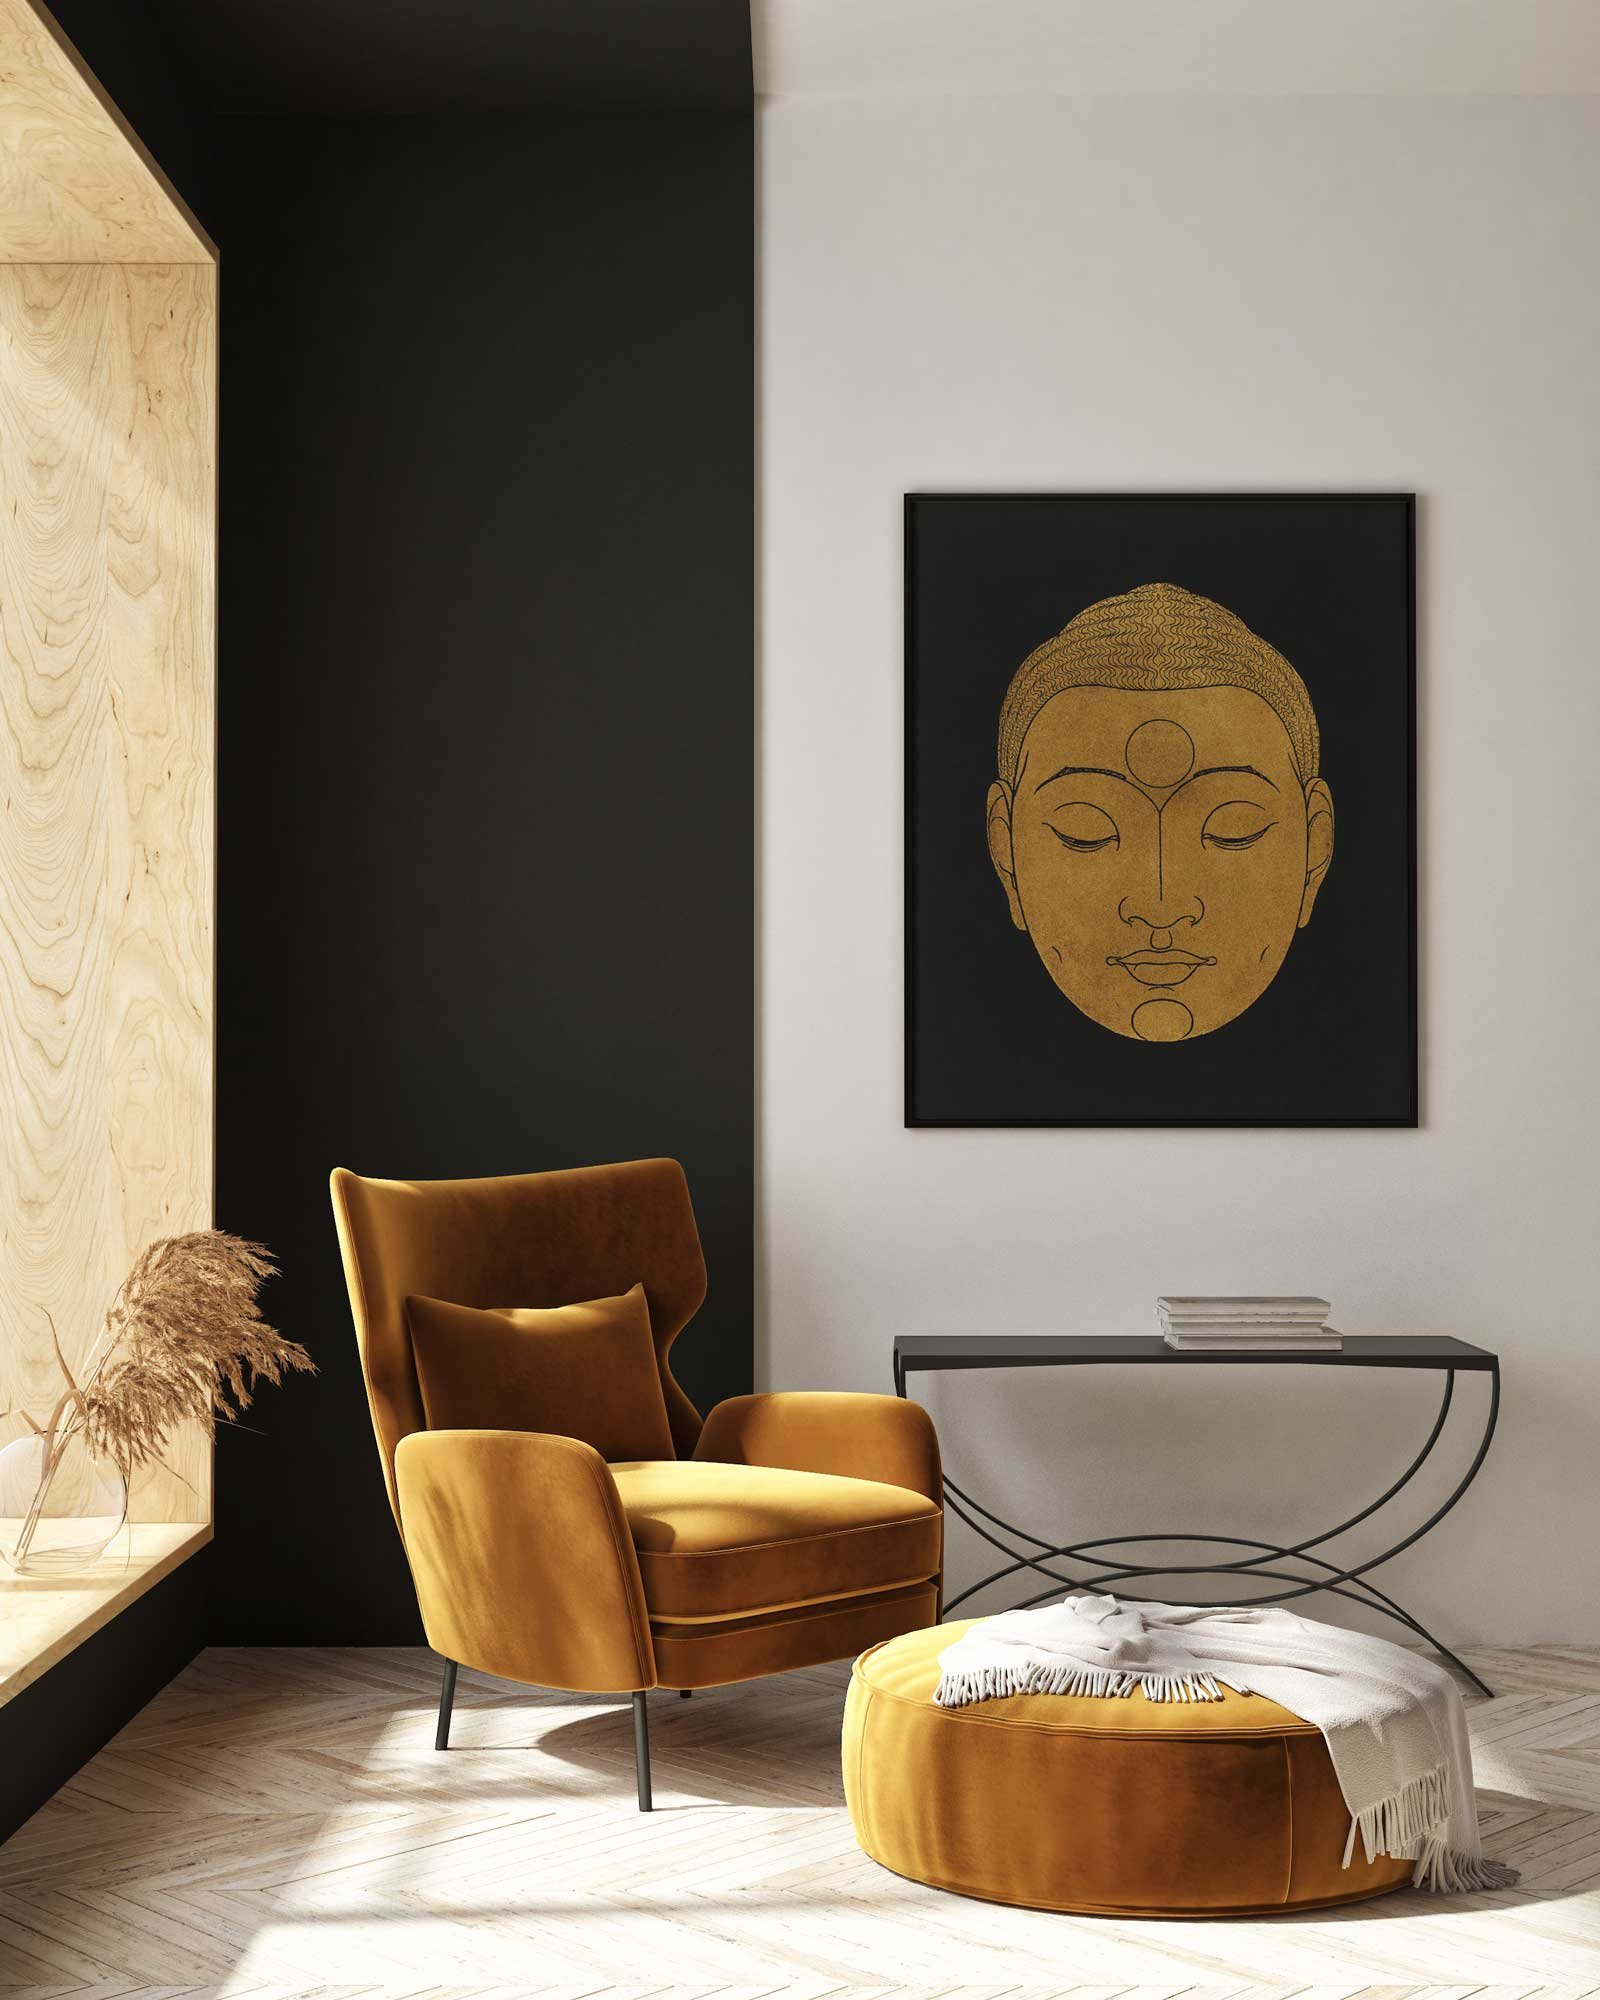 93 paveikslas Budos galva - Reijer Stolk